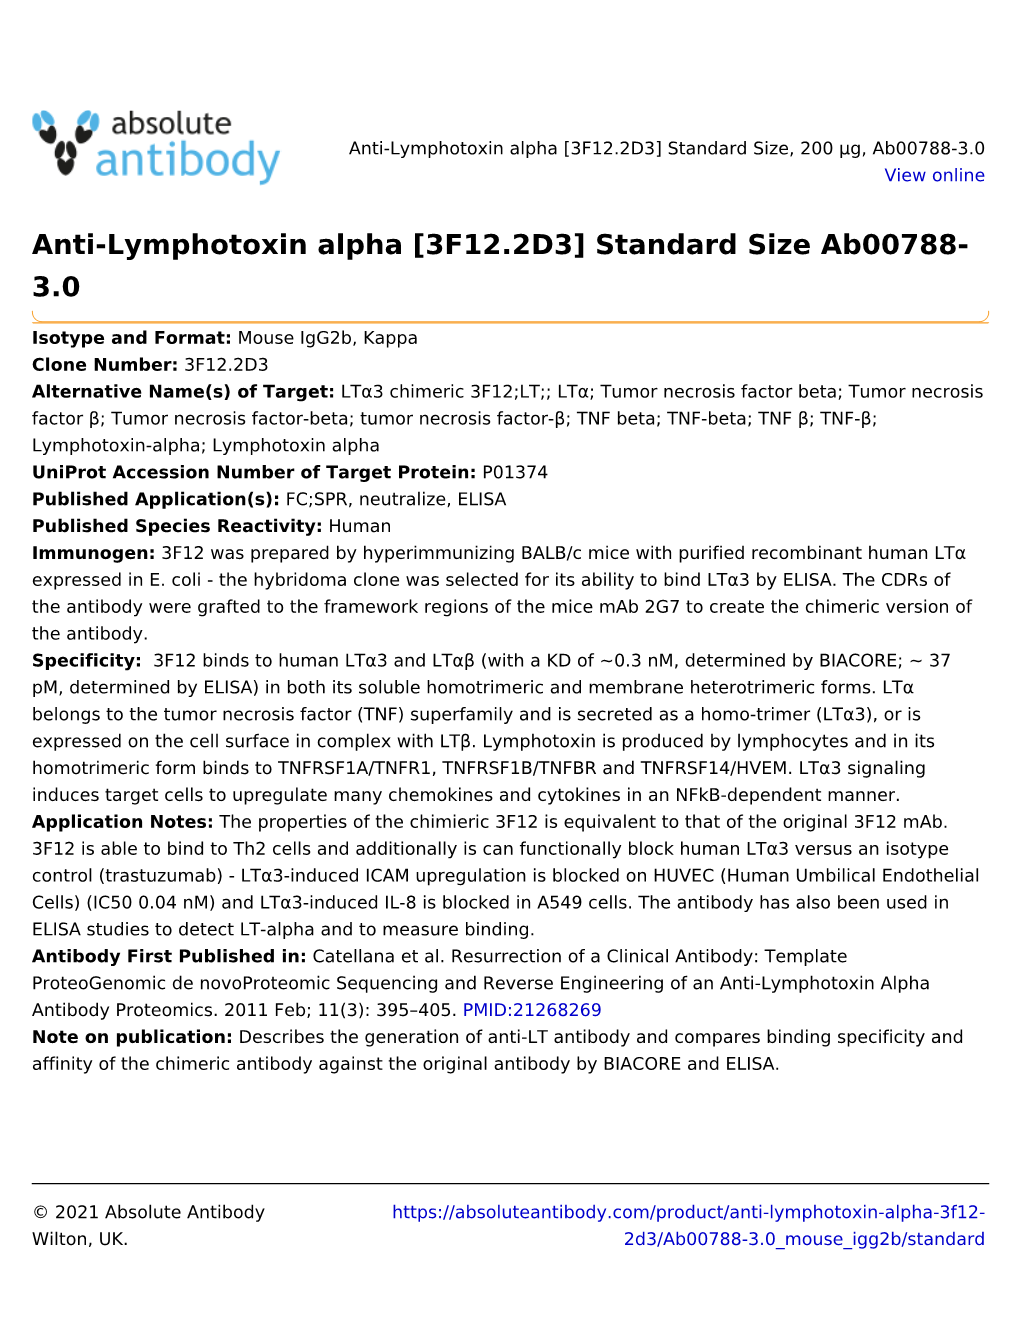 Anti-Lymphotoxin Alpha [3F12.2D3] Standard Size Ab00788- 3.0